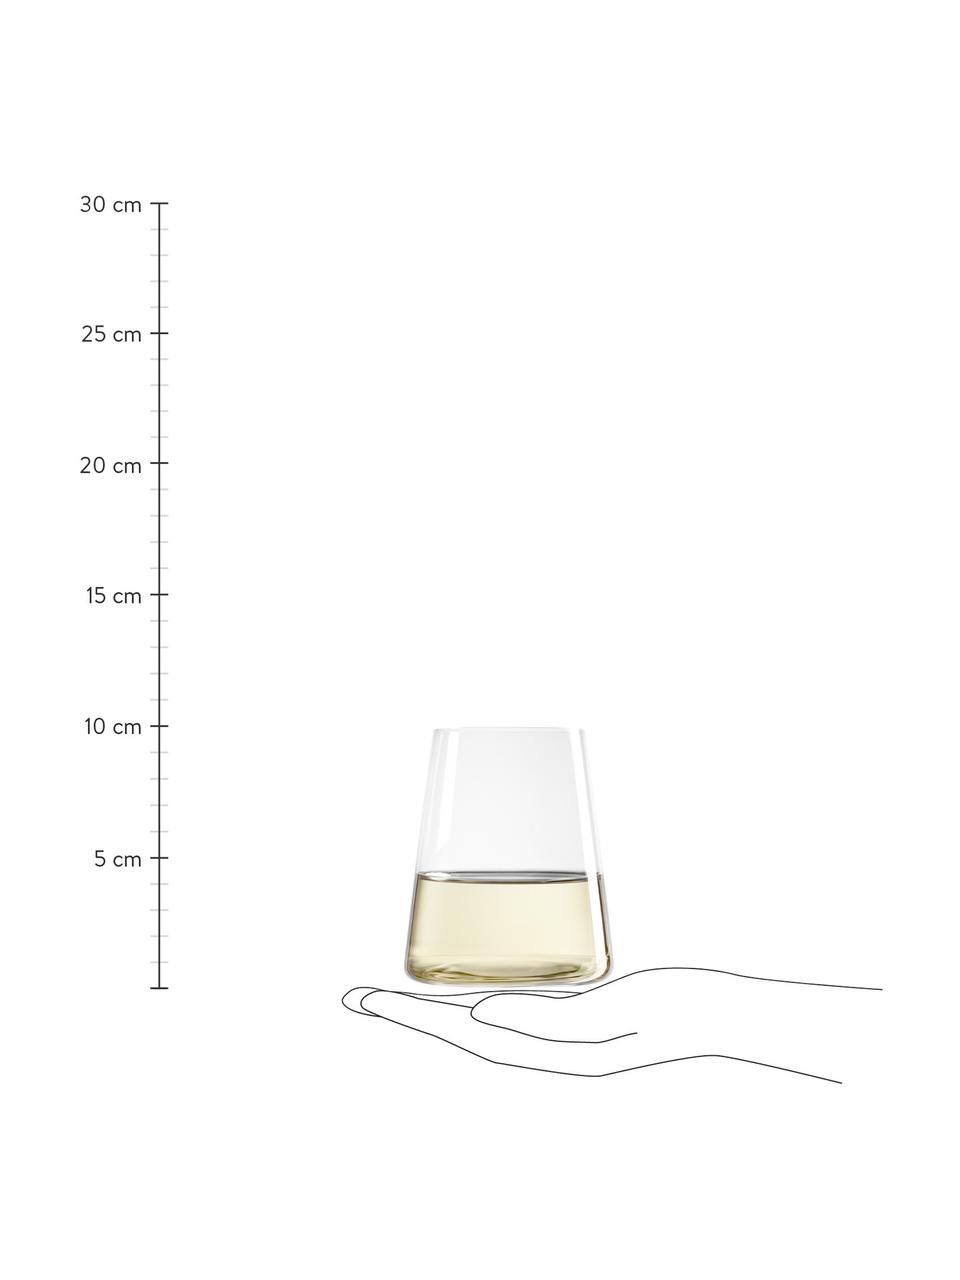 Křišťálové sklenice ve tvaru kužele Power, 6 ks, Křišťálové sklo, Transparentní, Ø 9 cm, V 10 cm, 380 ml